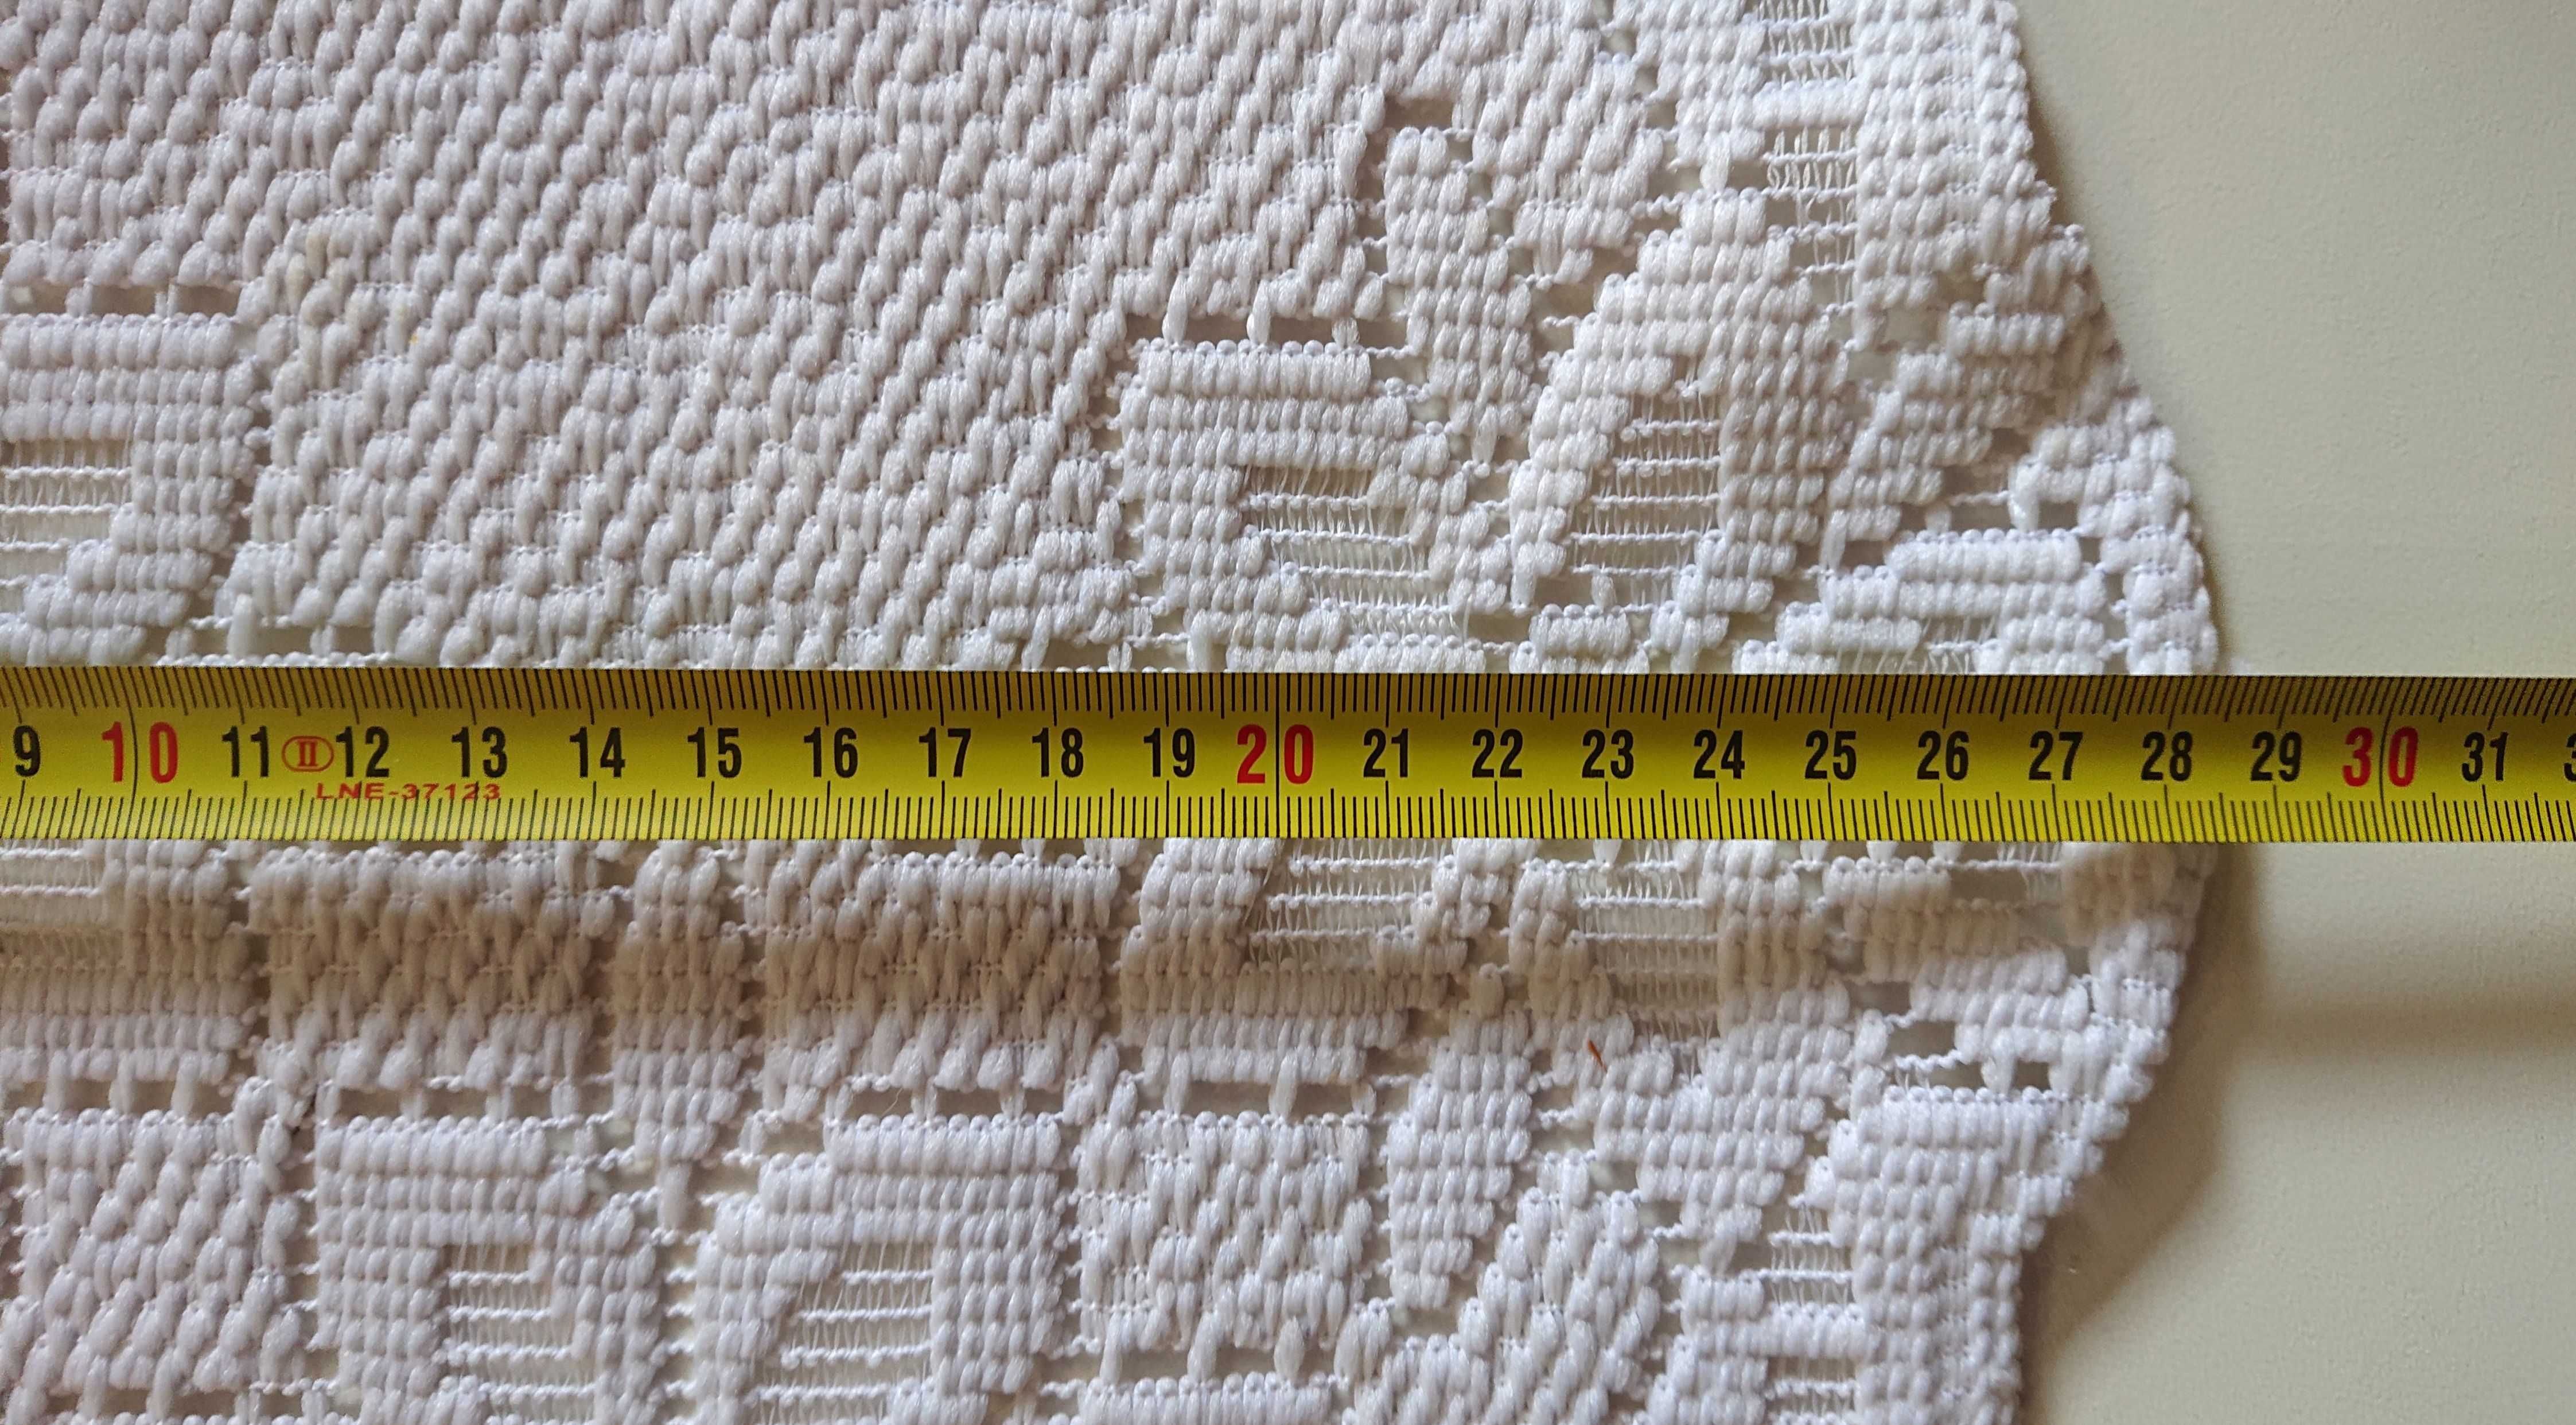 Stara serweta, 28 cm średnicy